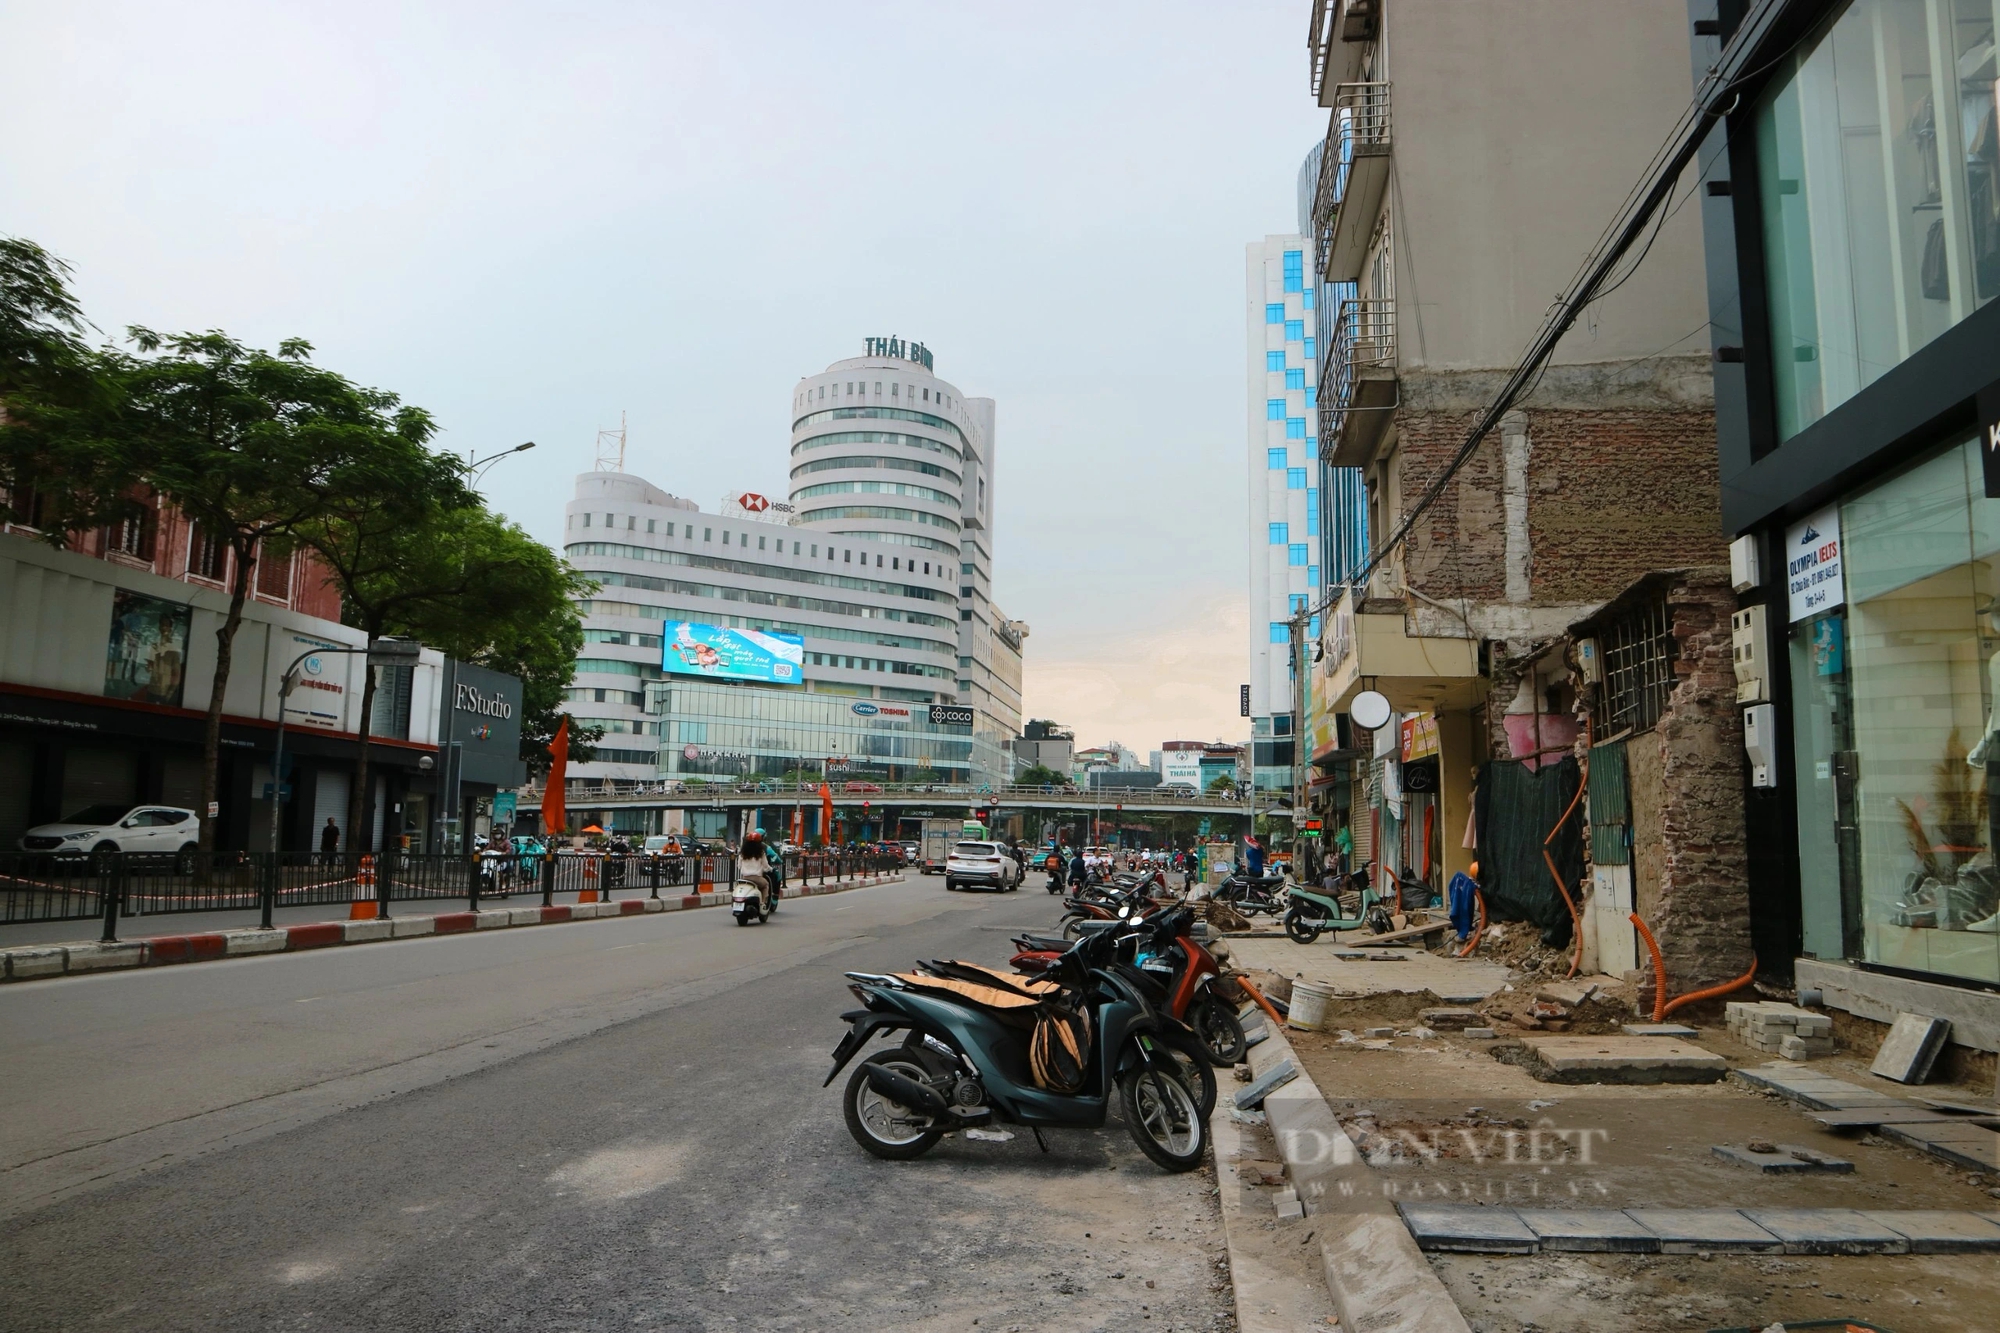 Dự án cải tạo nút giao thông Chùa Bộc – Thái Hà, gần hoàn thiện sau hàng chục năm triển khai- Ảnh 9.